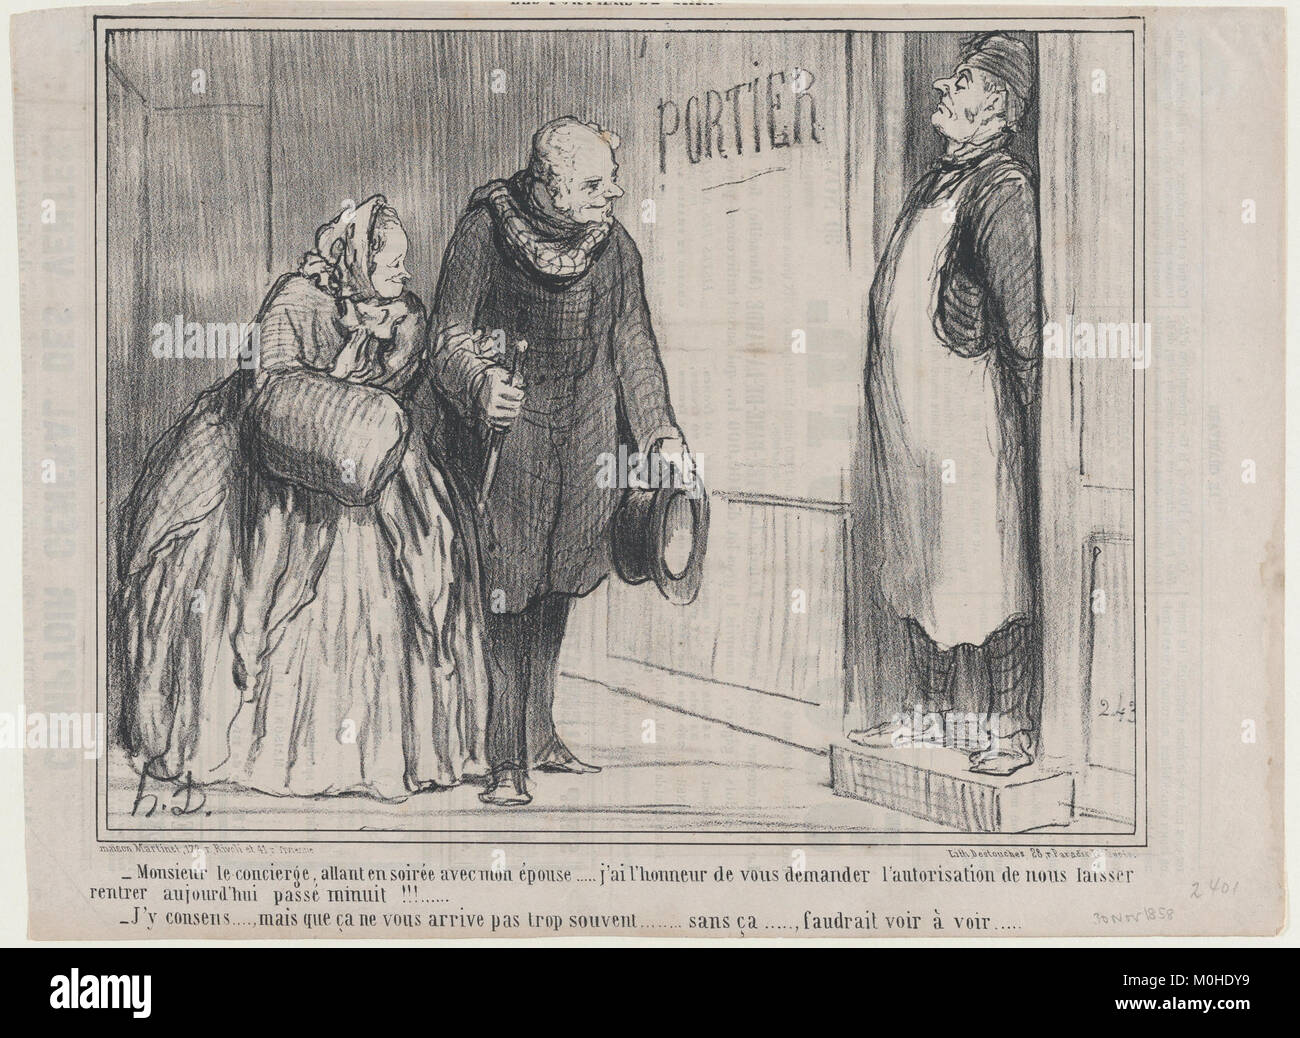 Monsieur le concierge, allant en soirée avec mon épouse..., des portiers de Paris, publiée dans Le Charivari, le 30 novembre 1858, a rencontré DP876726 Banque D'Images